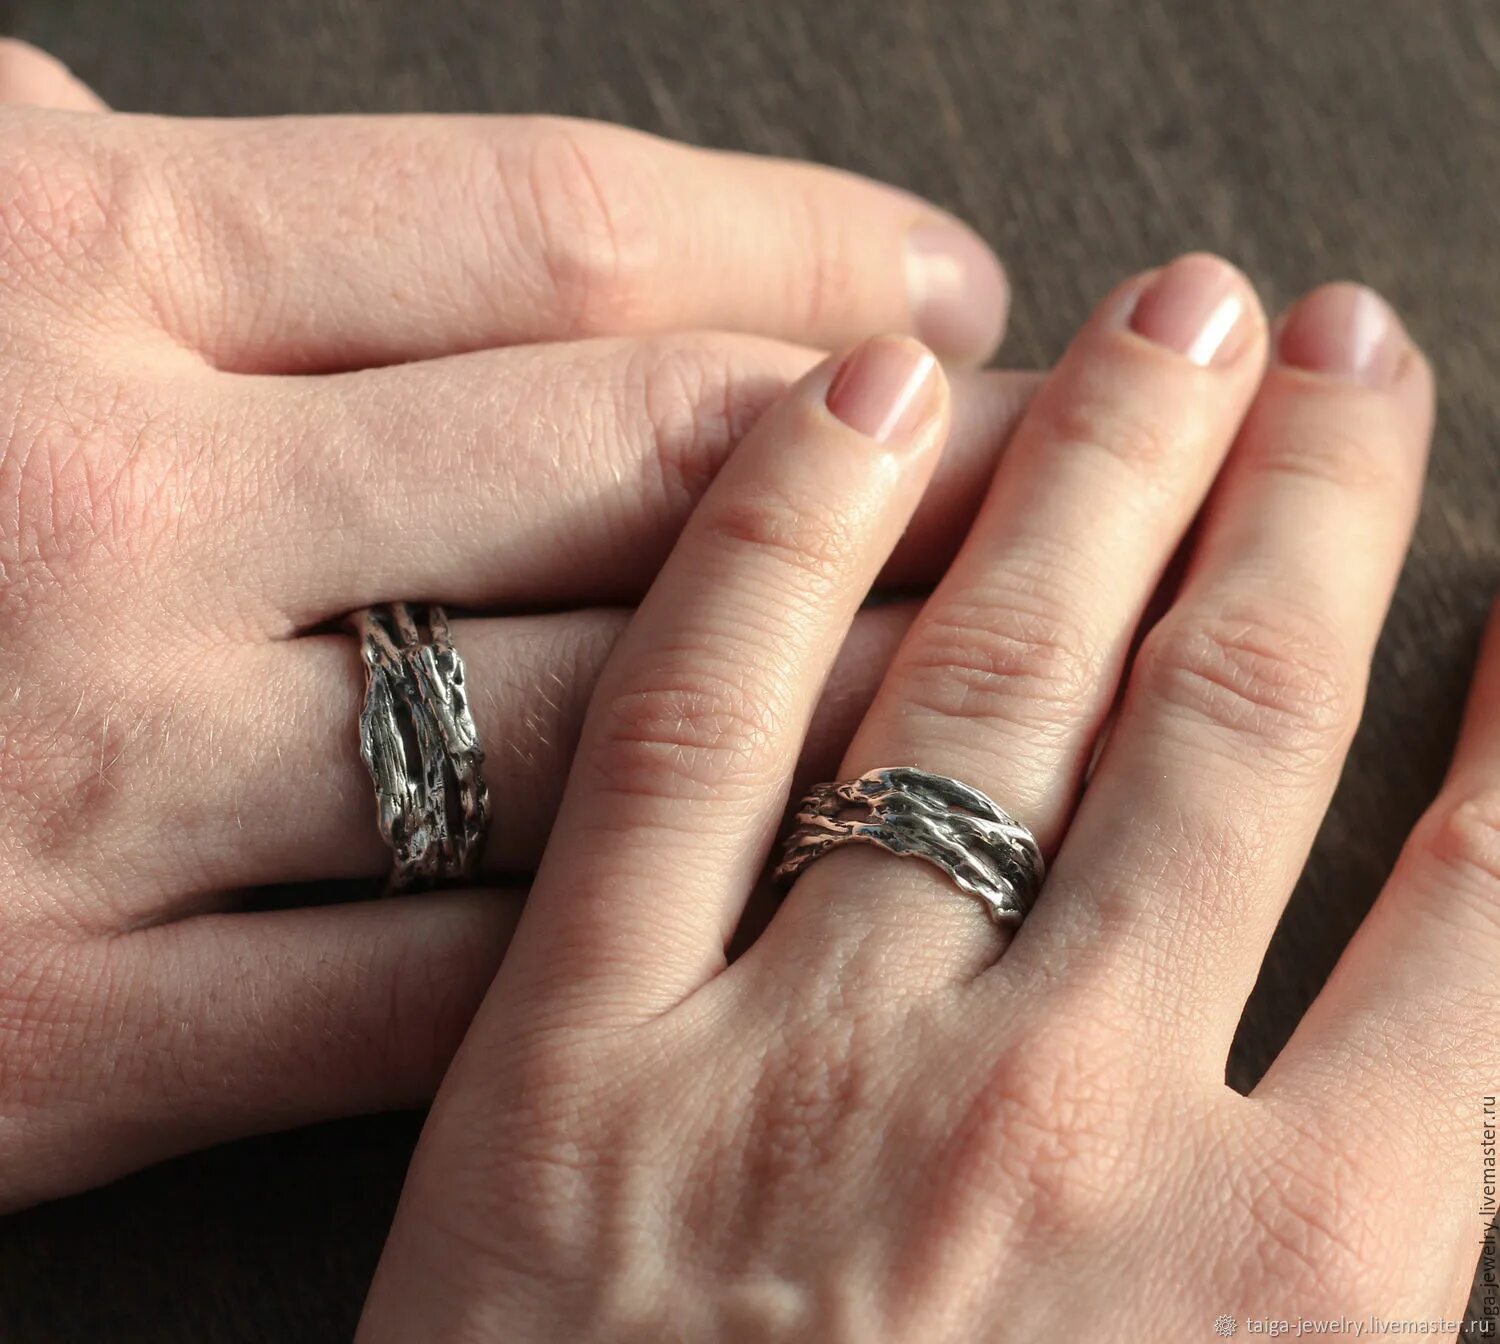 Моргенштерн кольцо обручальное. Обручальные кольца МОРГЕНШТЕРНА И Дилары. Необычные кольца. Необычные серебряные кольца.